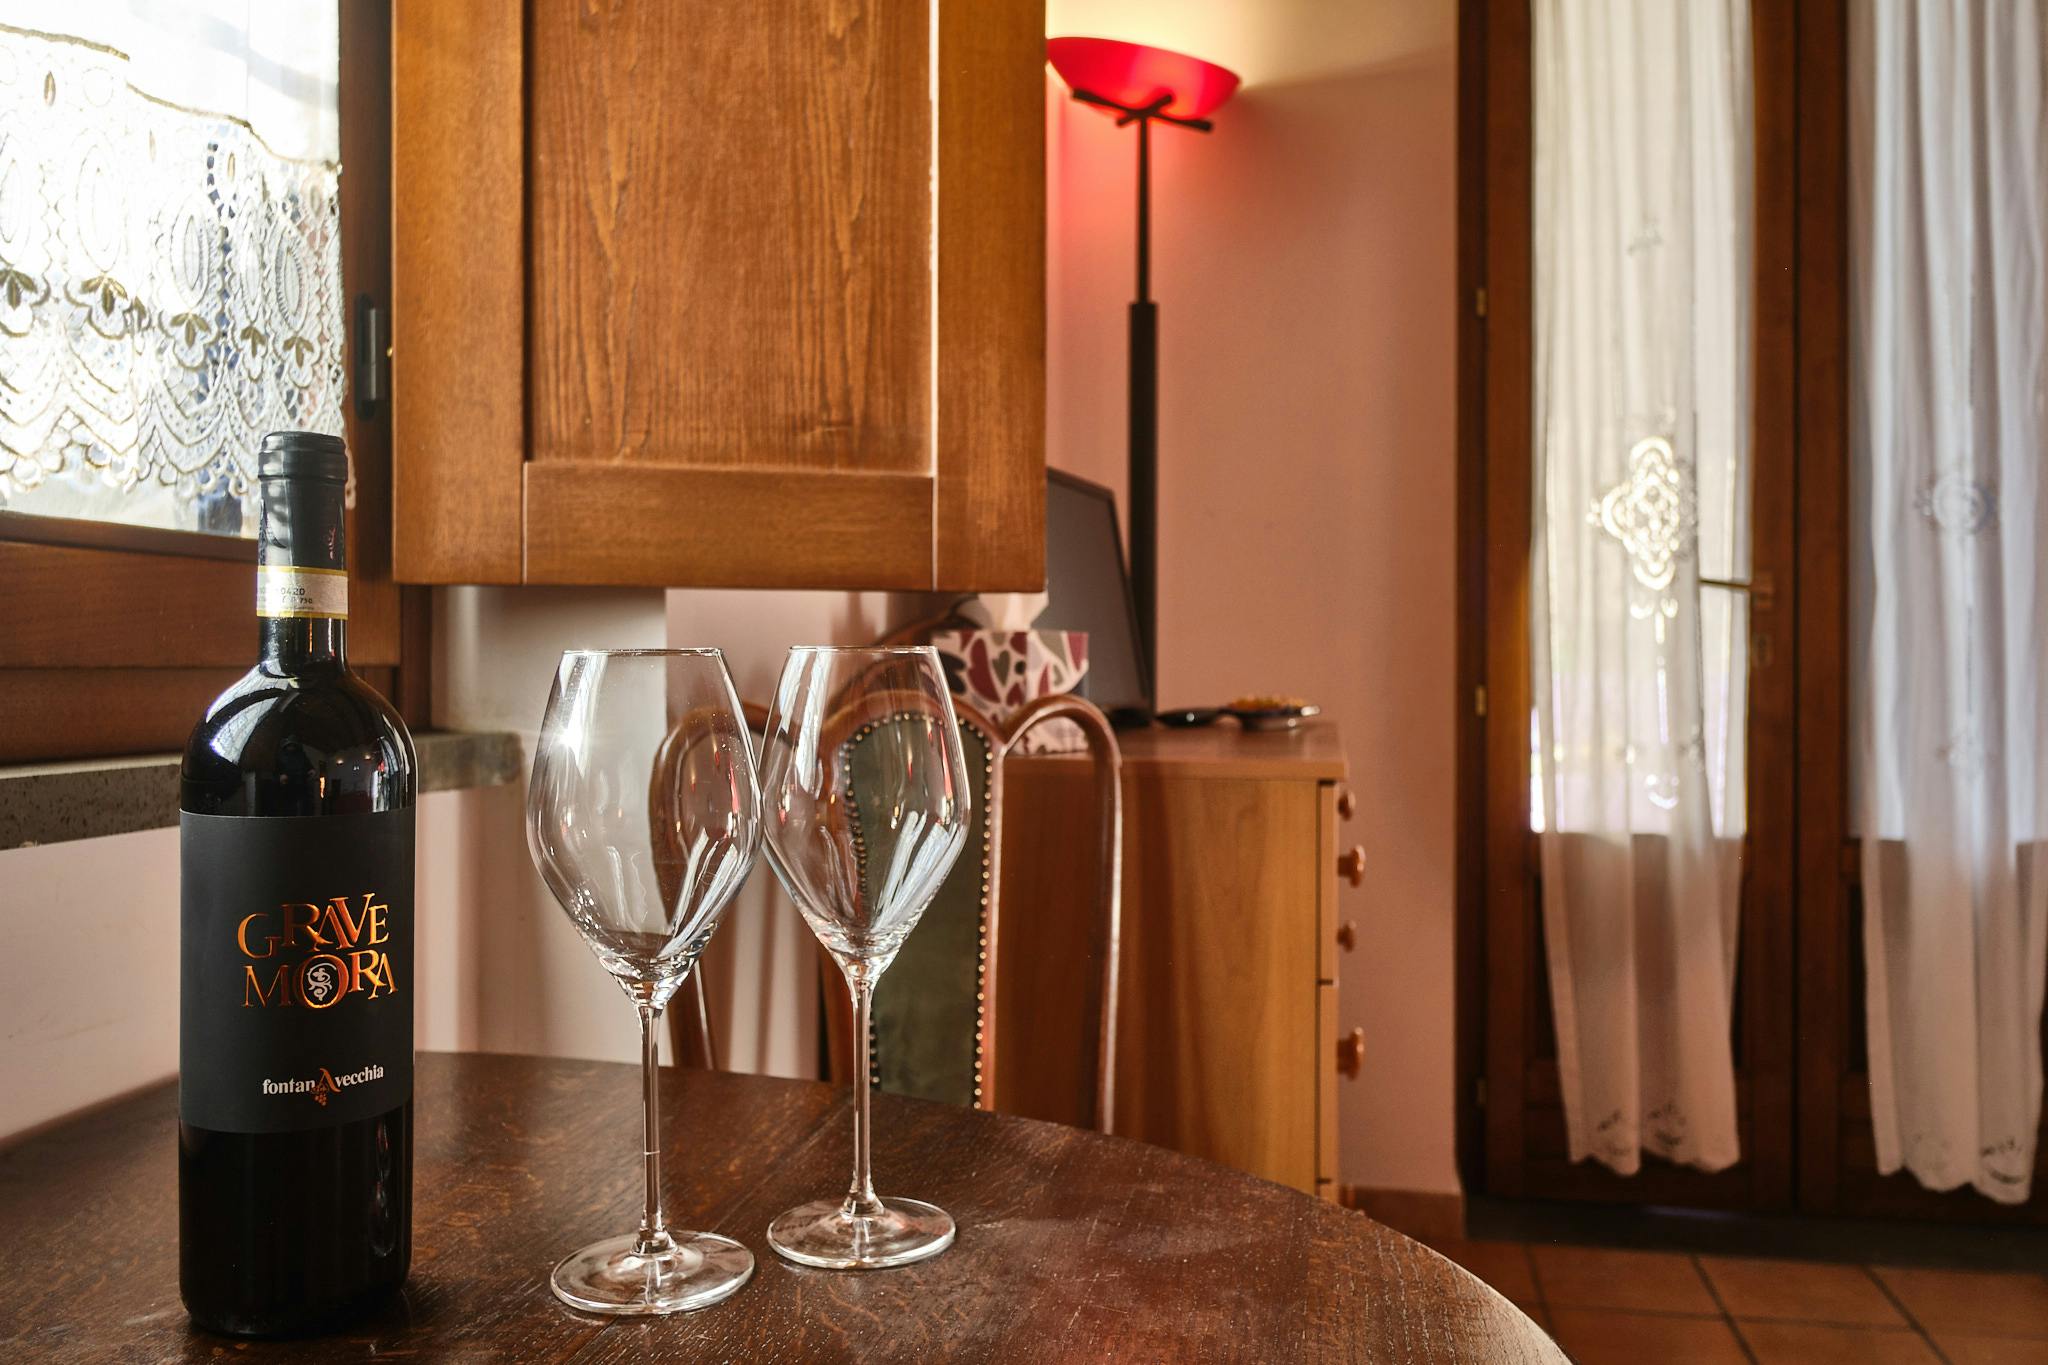 Detalle de dos copas y una botella de vino Grave Mora de las bodegas Fontana Vecchia sobre la mesa del Chalet de la finca Le Pietre en Pietrelcina